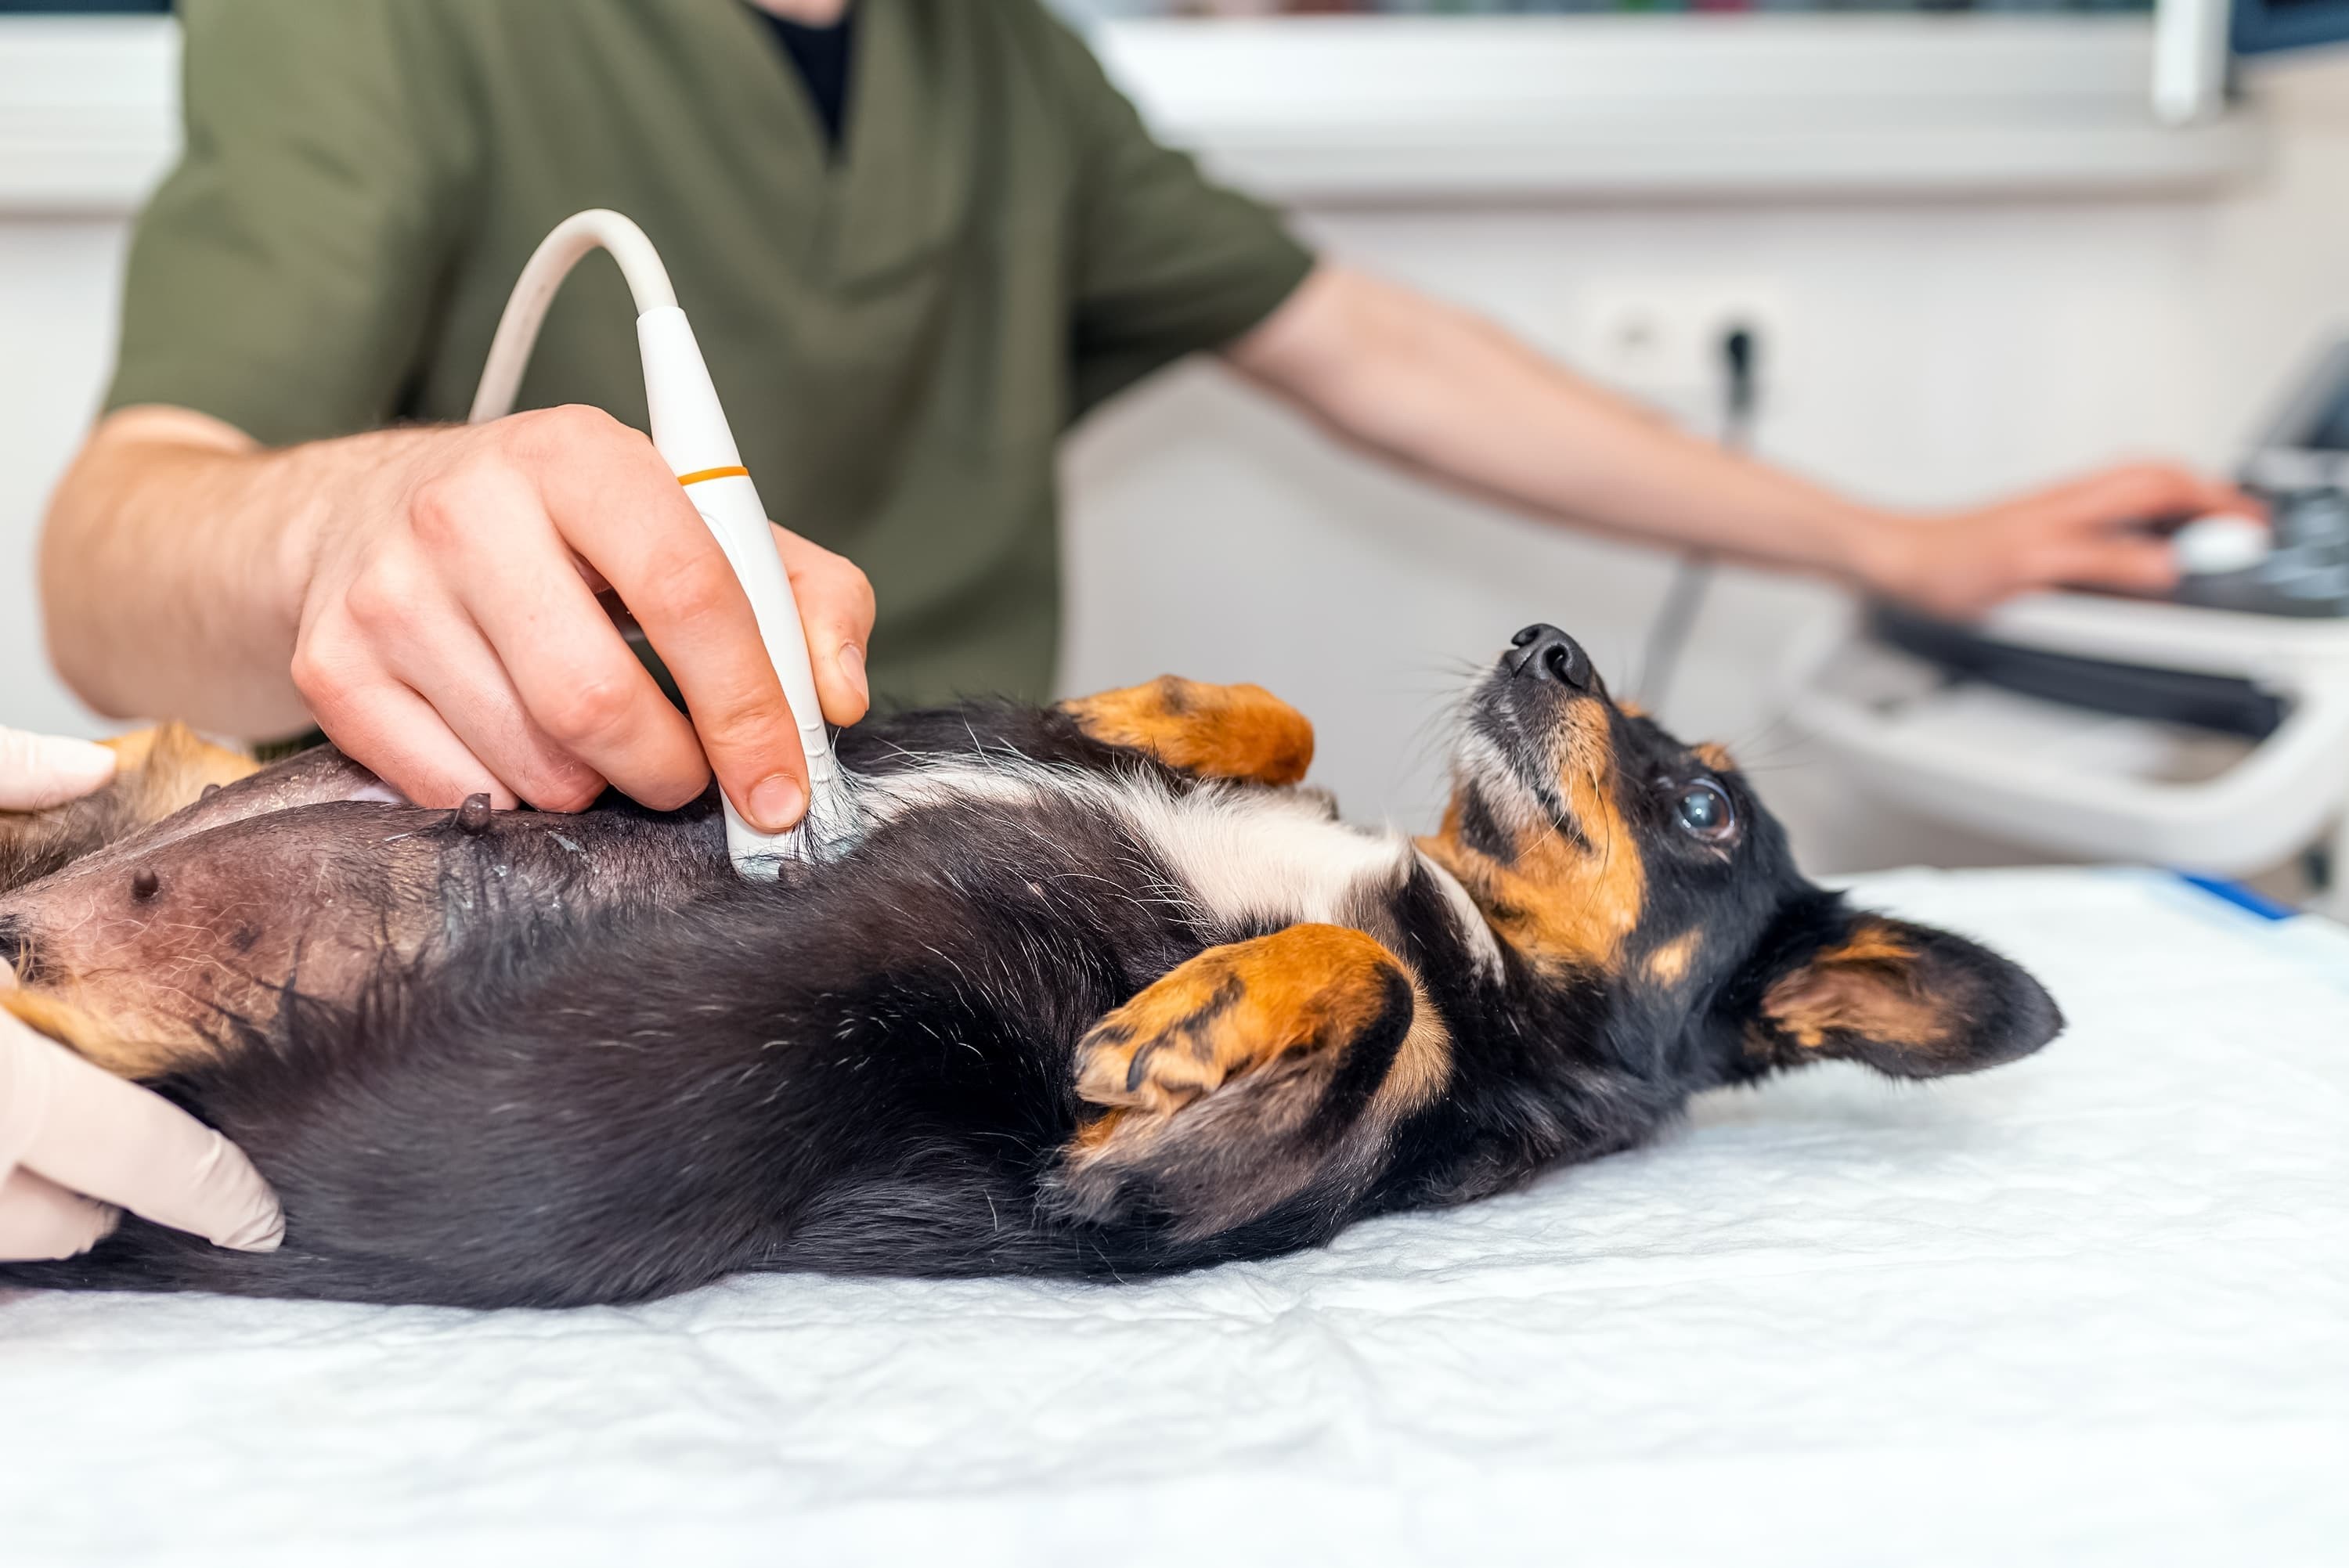 Imagem de um cachorro preto com manchas brancas e marrons deitado de barriga para cima em uma maca, enquanto um médico veterinário faz um ultrassom nele.